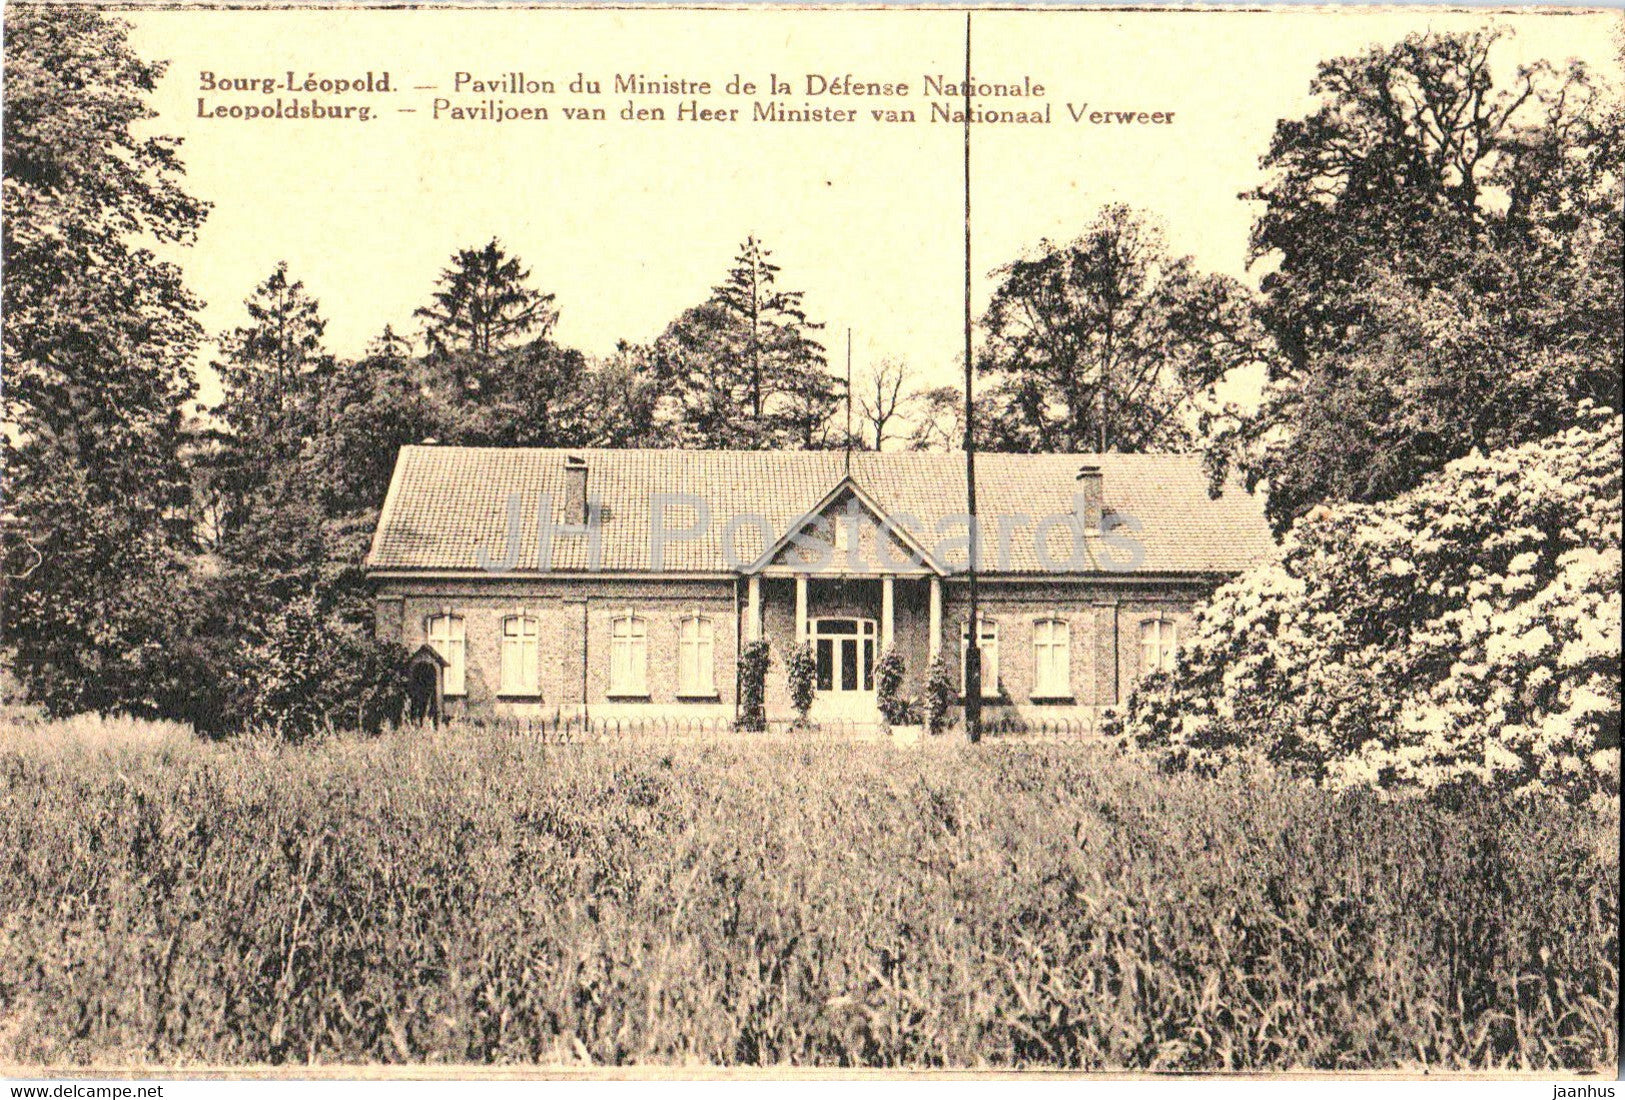 Bourg Leopold - Leopoldsburg - Pavillon du Ministre de la Defense Nationale - old postcard - Belgium - unused - JH Postcards